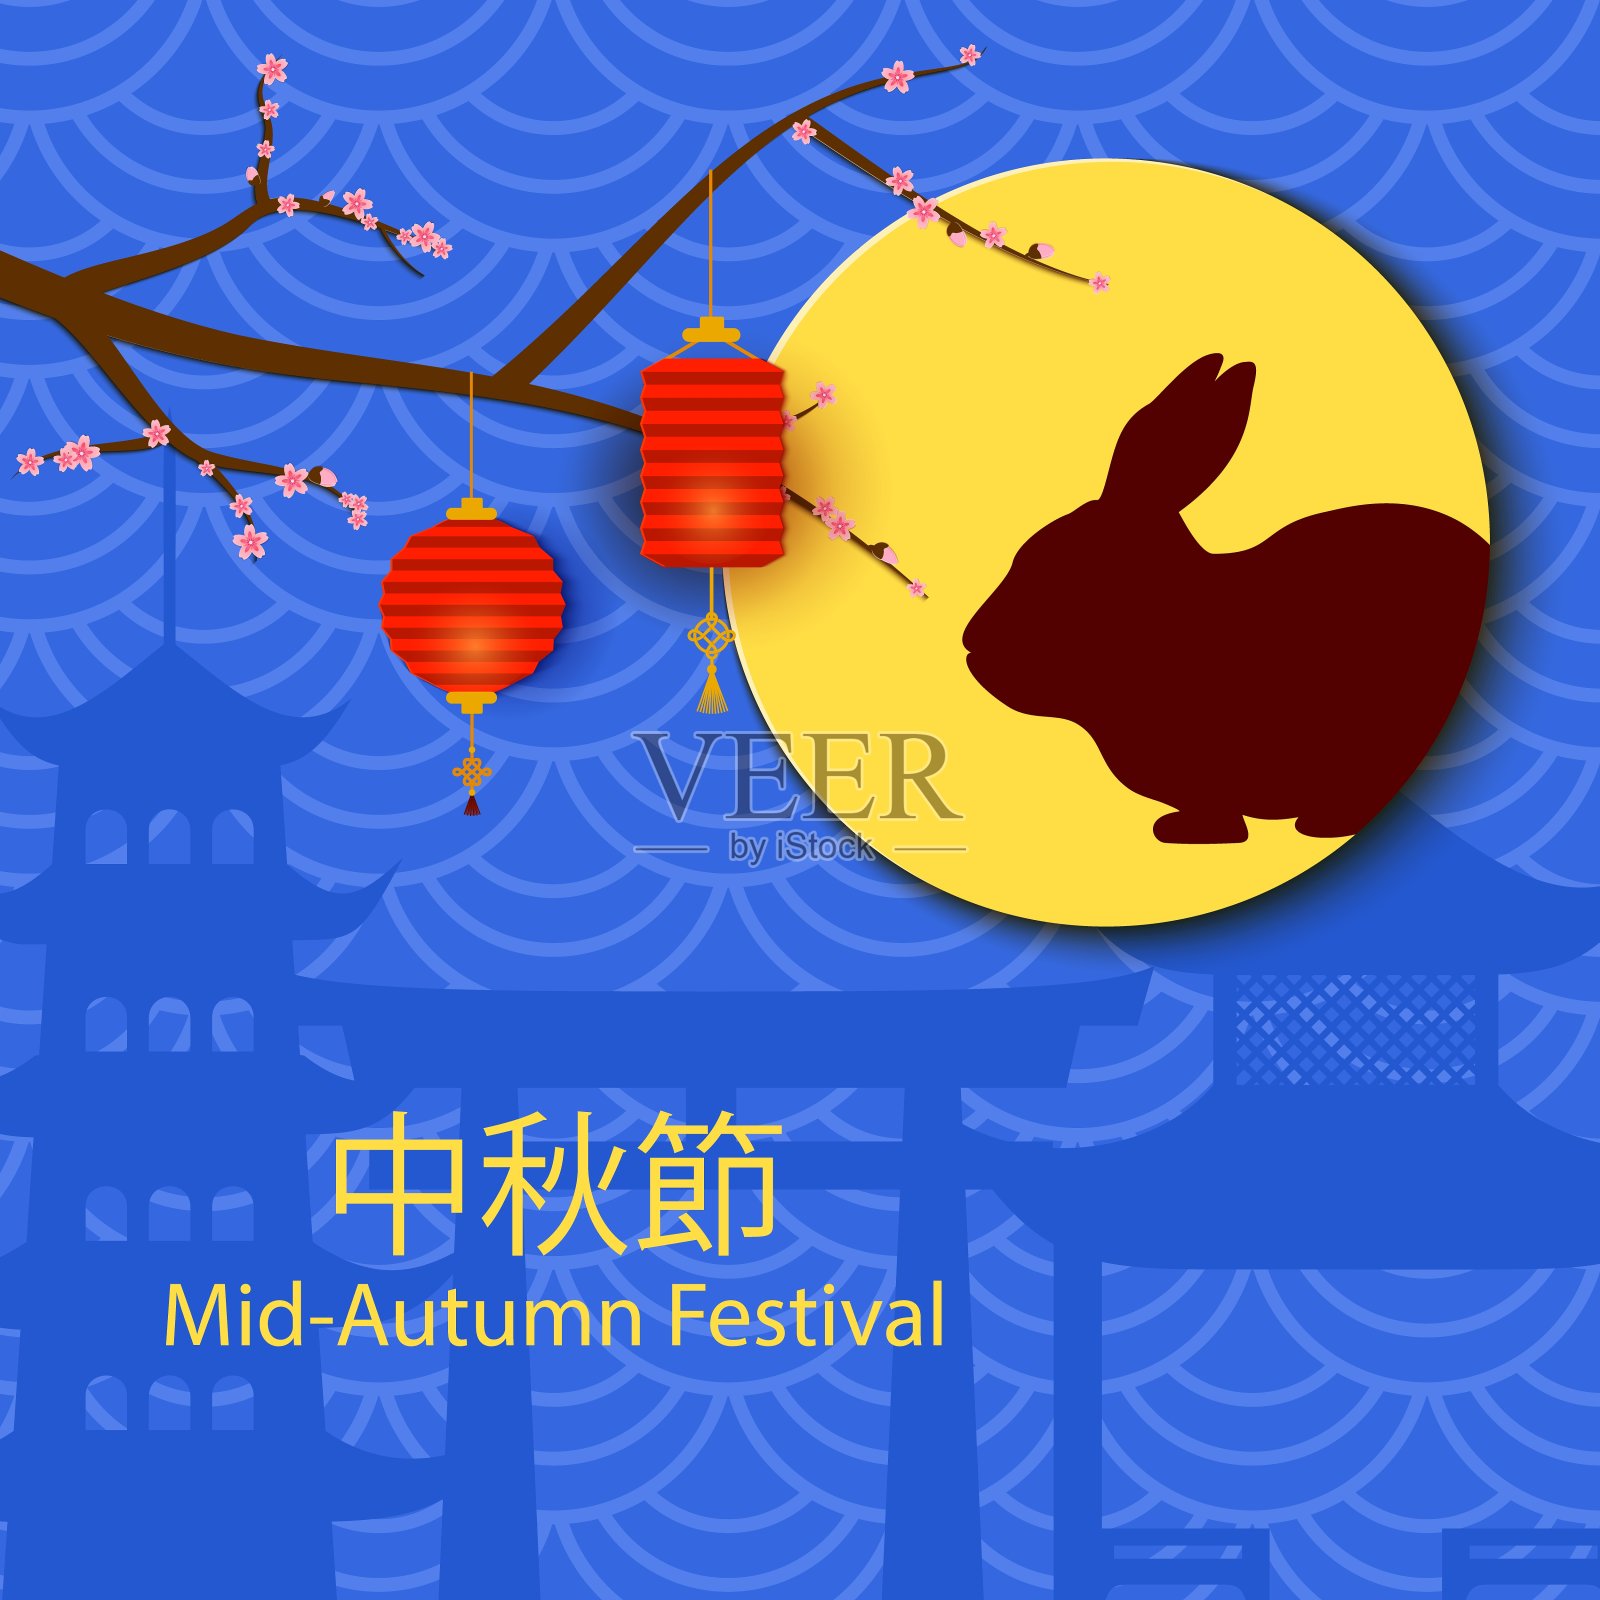 中国中秋节贺卡。节日背景樱花枝，兔子剪影在满月和蓝色背景灯笼。东方风格的节日海报，纸张设计。向量。设计模板素材